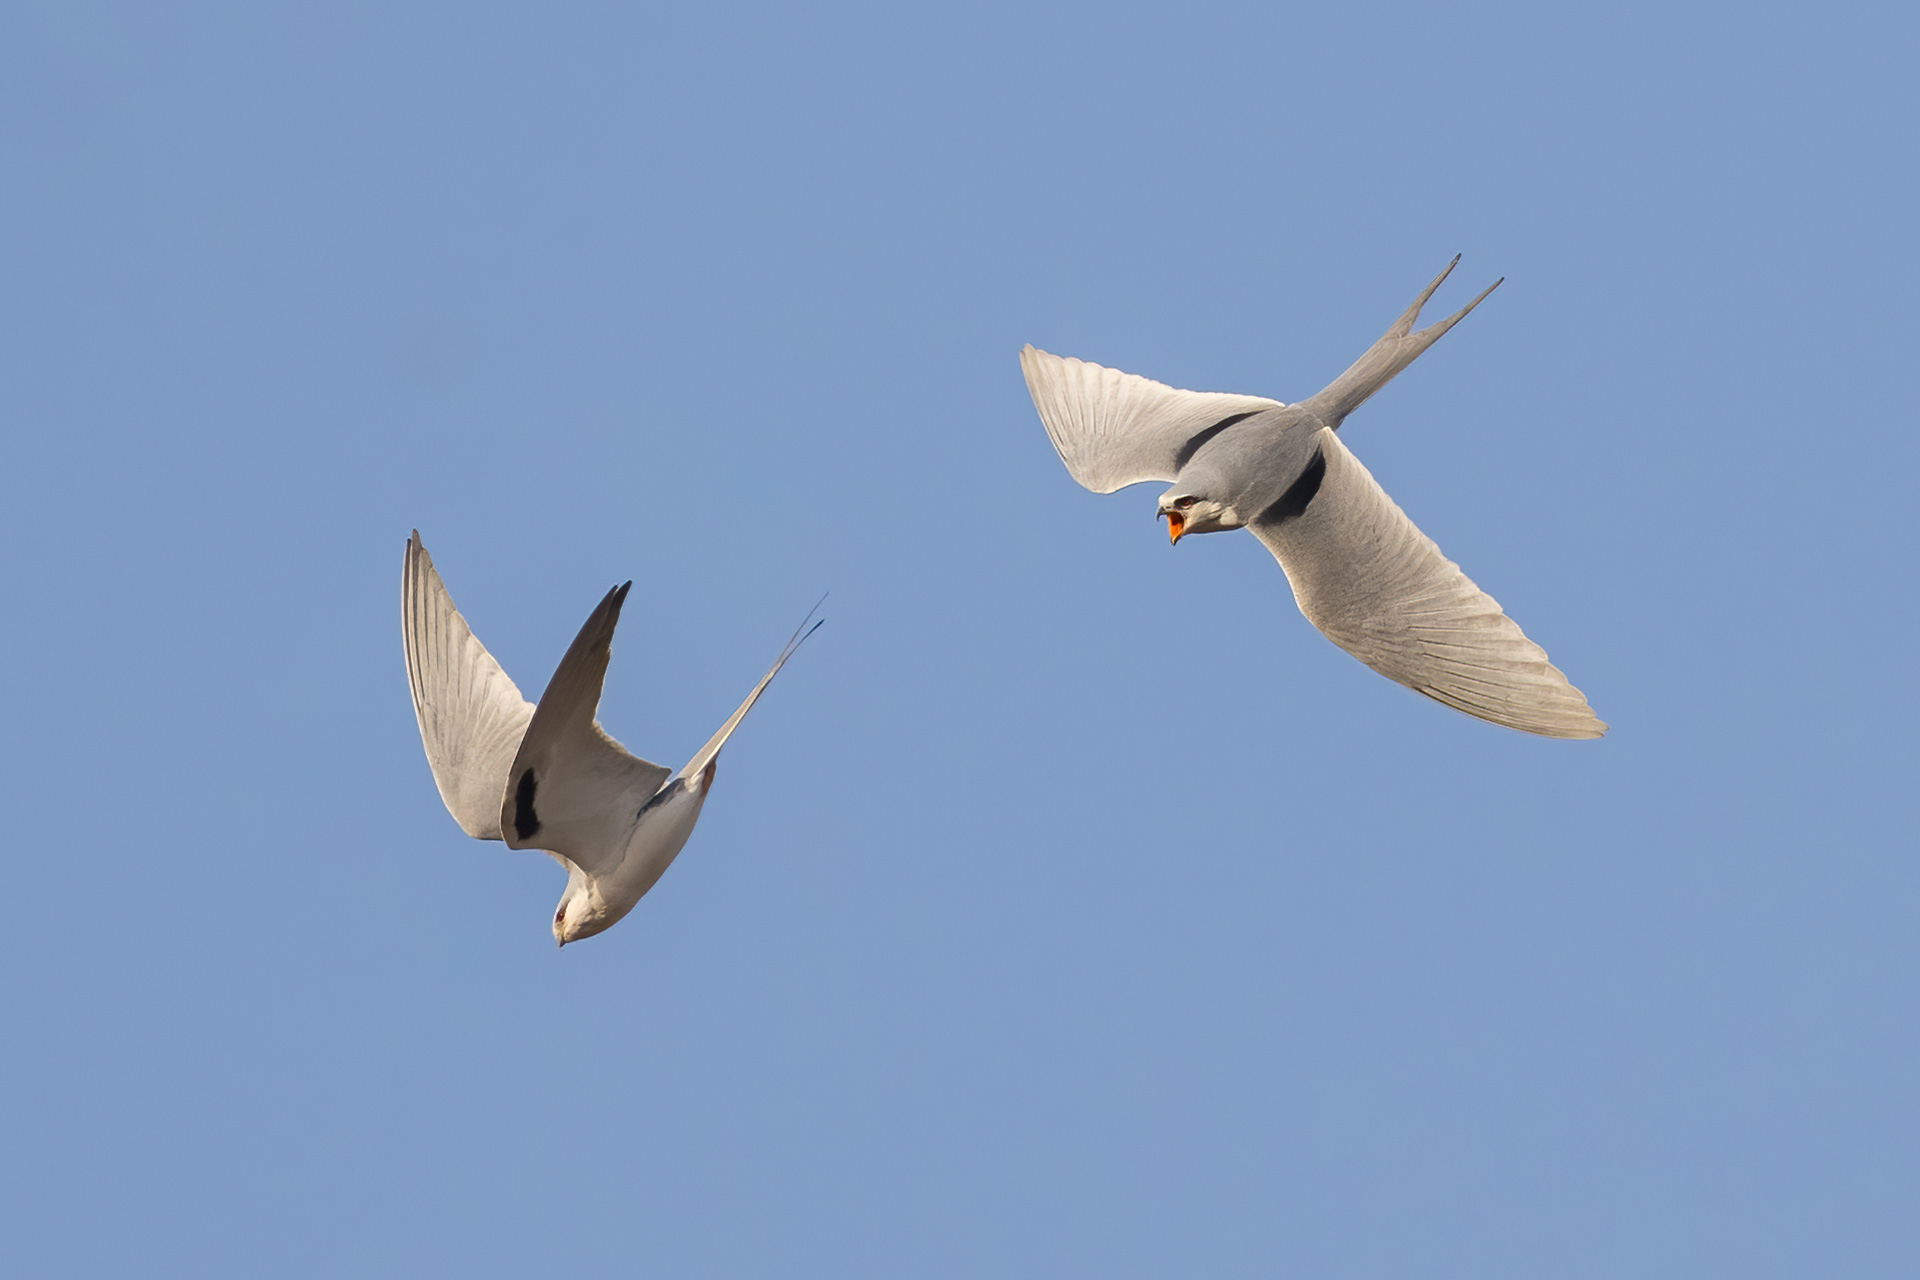 Scissor-tailed Kites, by Yeray Seminario